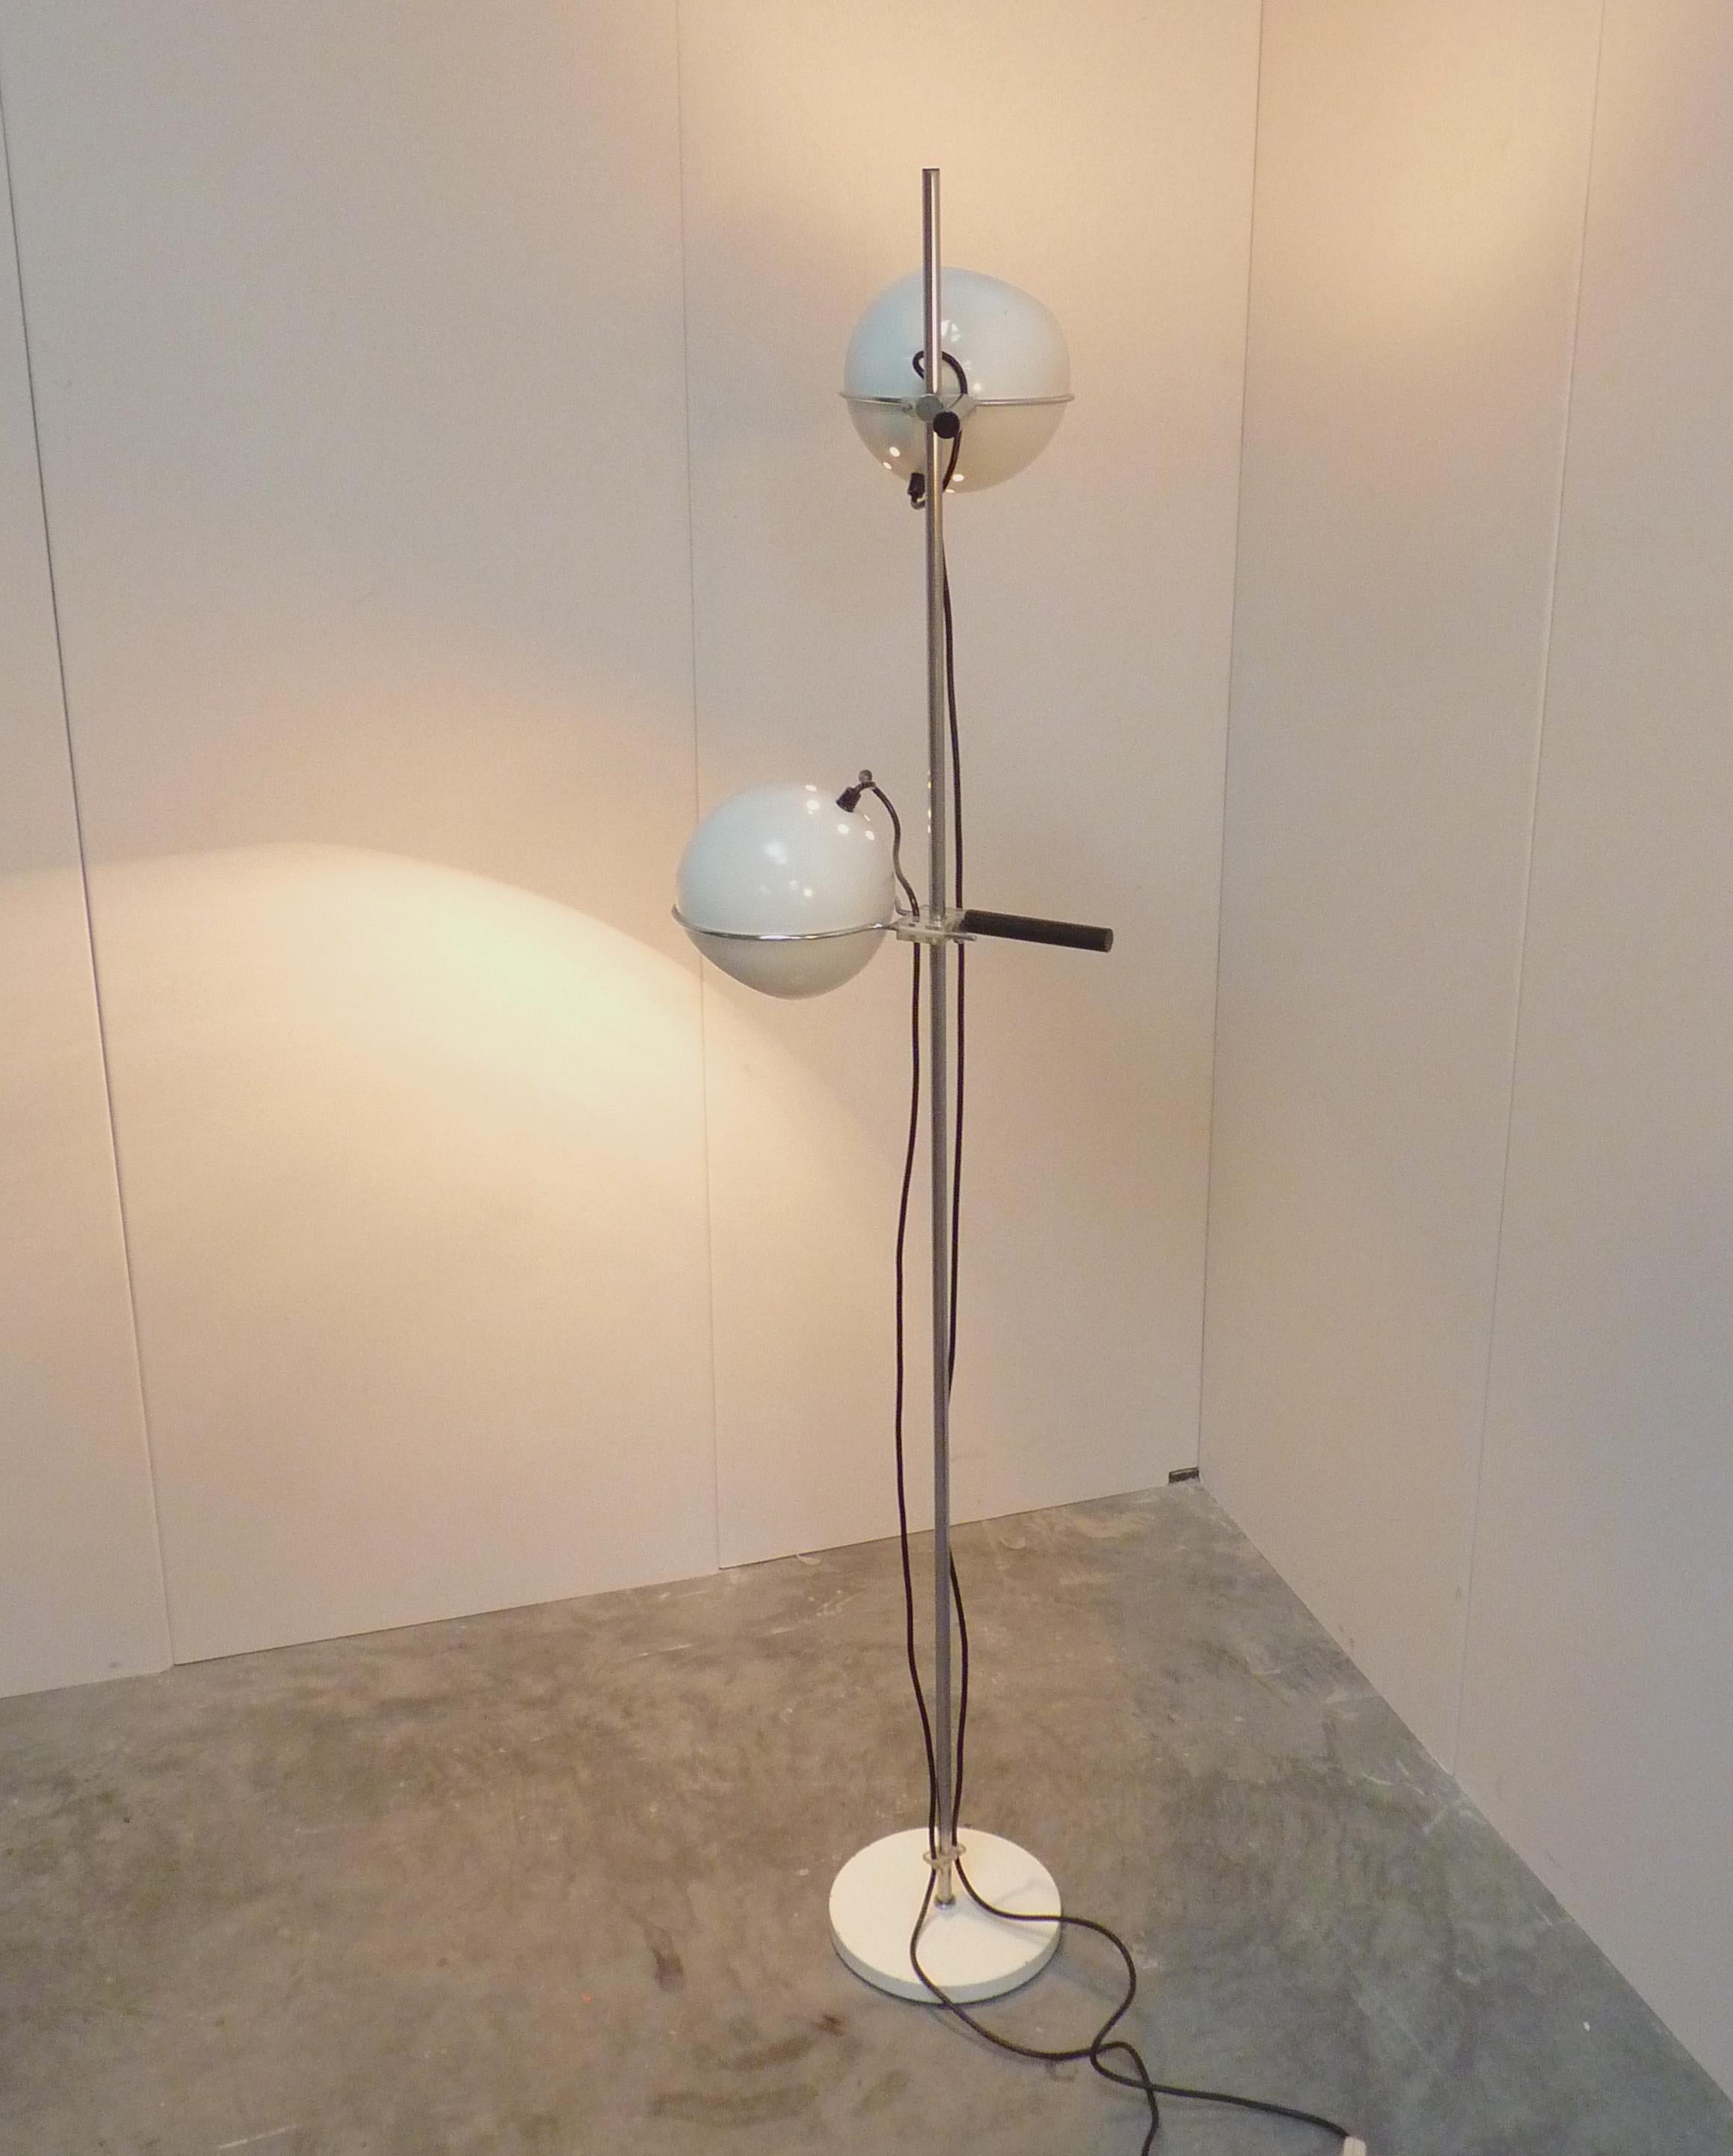 Une lampe Gepo bien connue est le Gepo 300 ou le lampadaire Gepo Napoli, conçu à la fin des années 1960 et équipé de poignées stylisées spéciales au niveau des points lumineux. Il s'agit d'un magnifique lampadaire vintage avec 2 points lumineux. Les